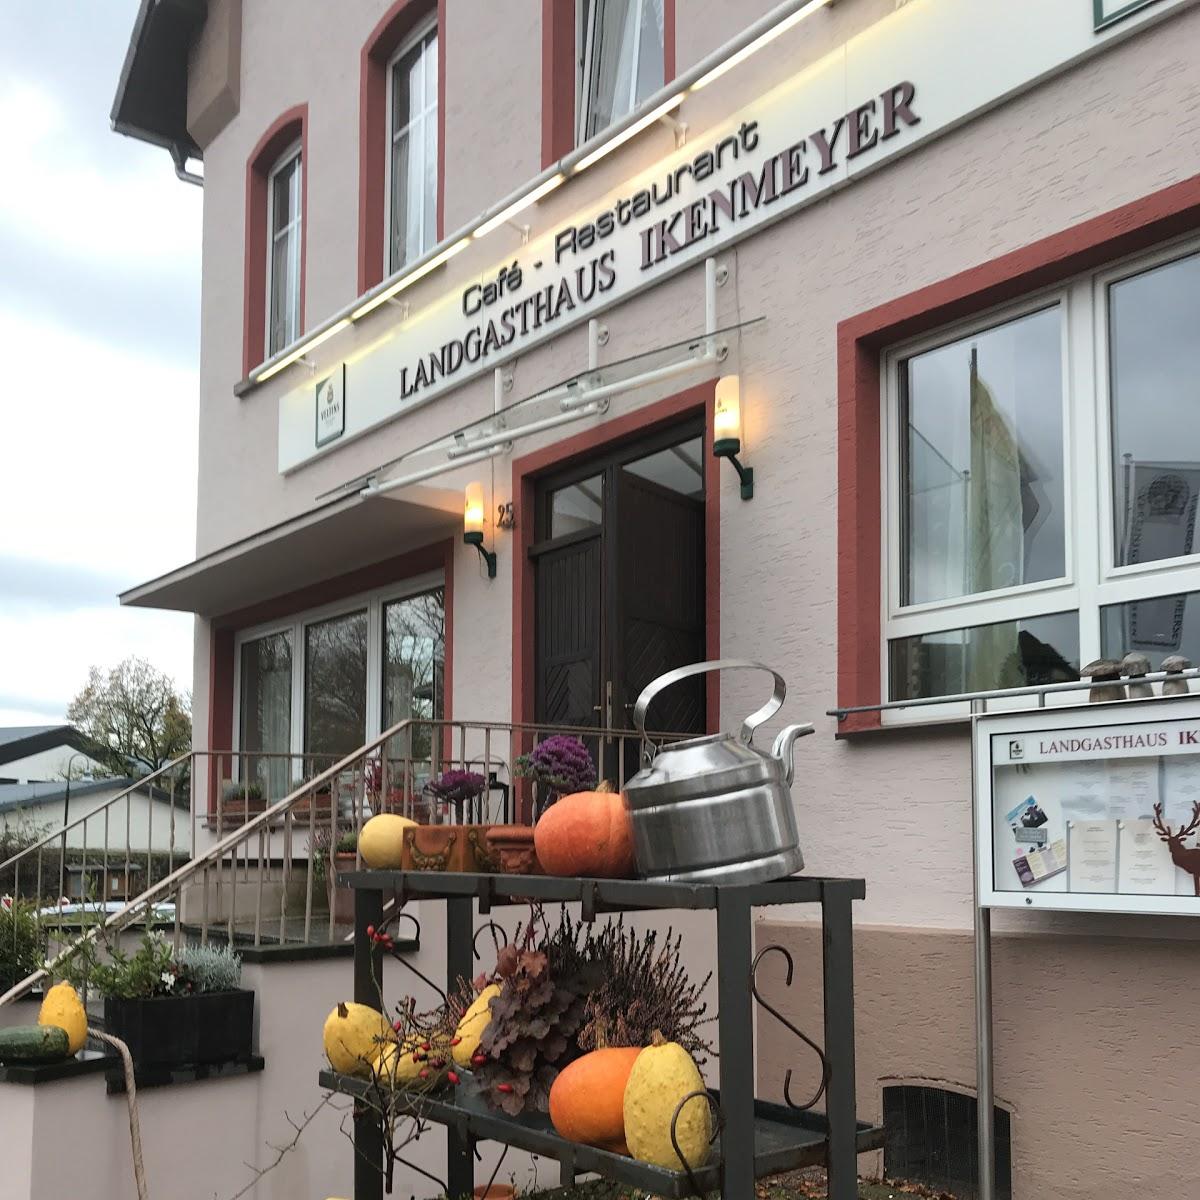 Restaurant "Landgasthaus Ikenmeyer" in  Driburg